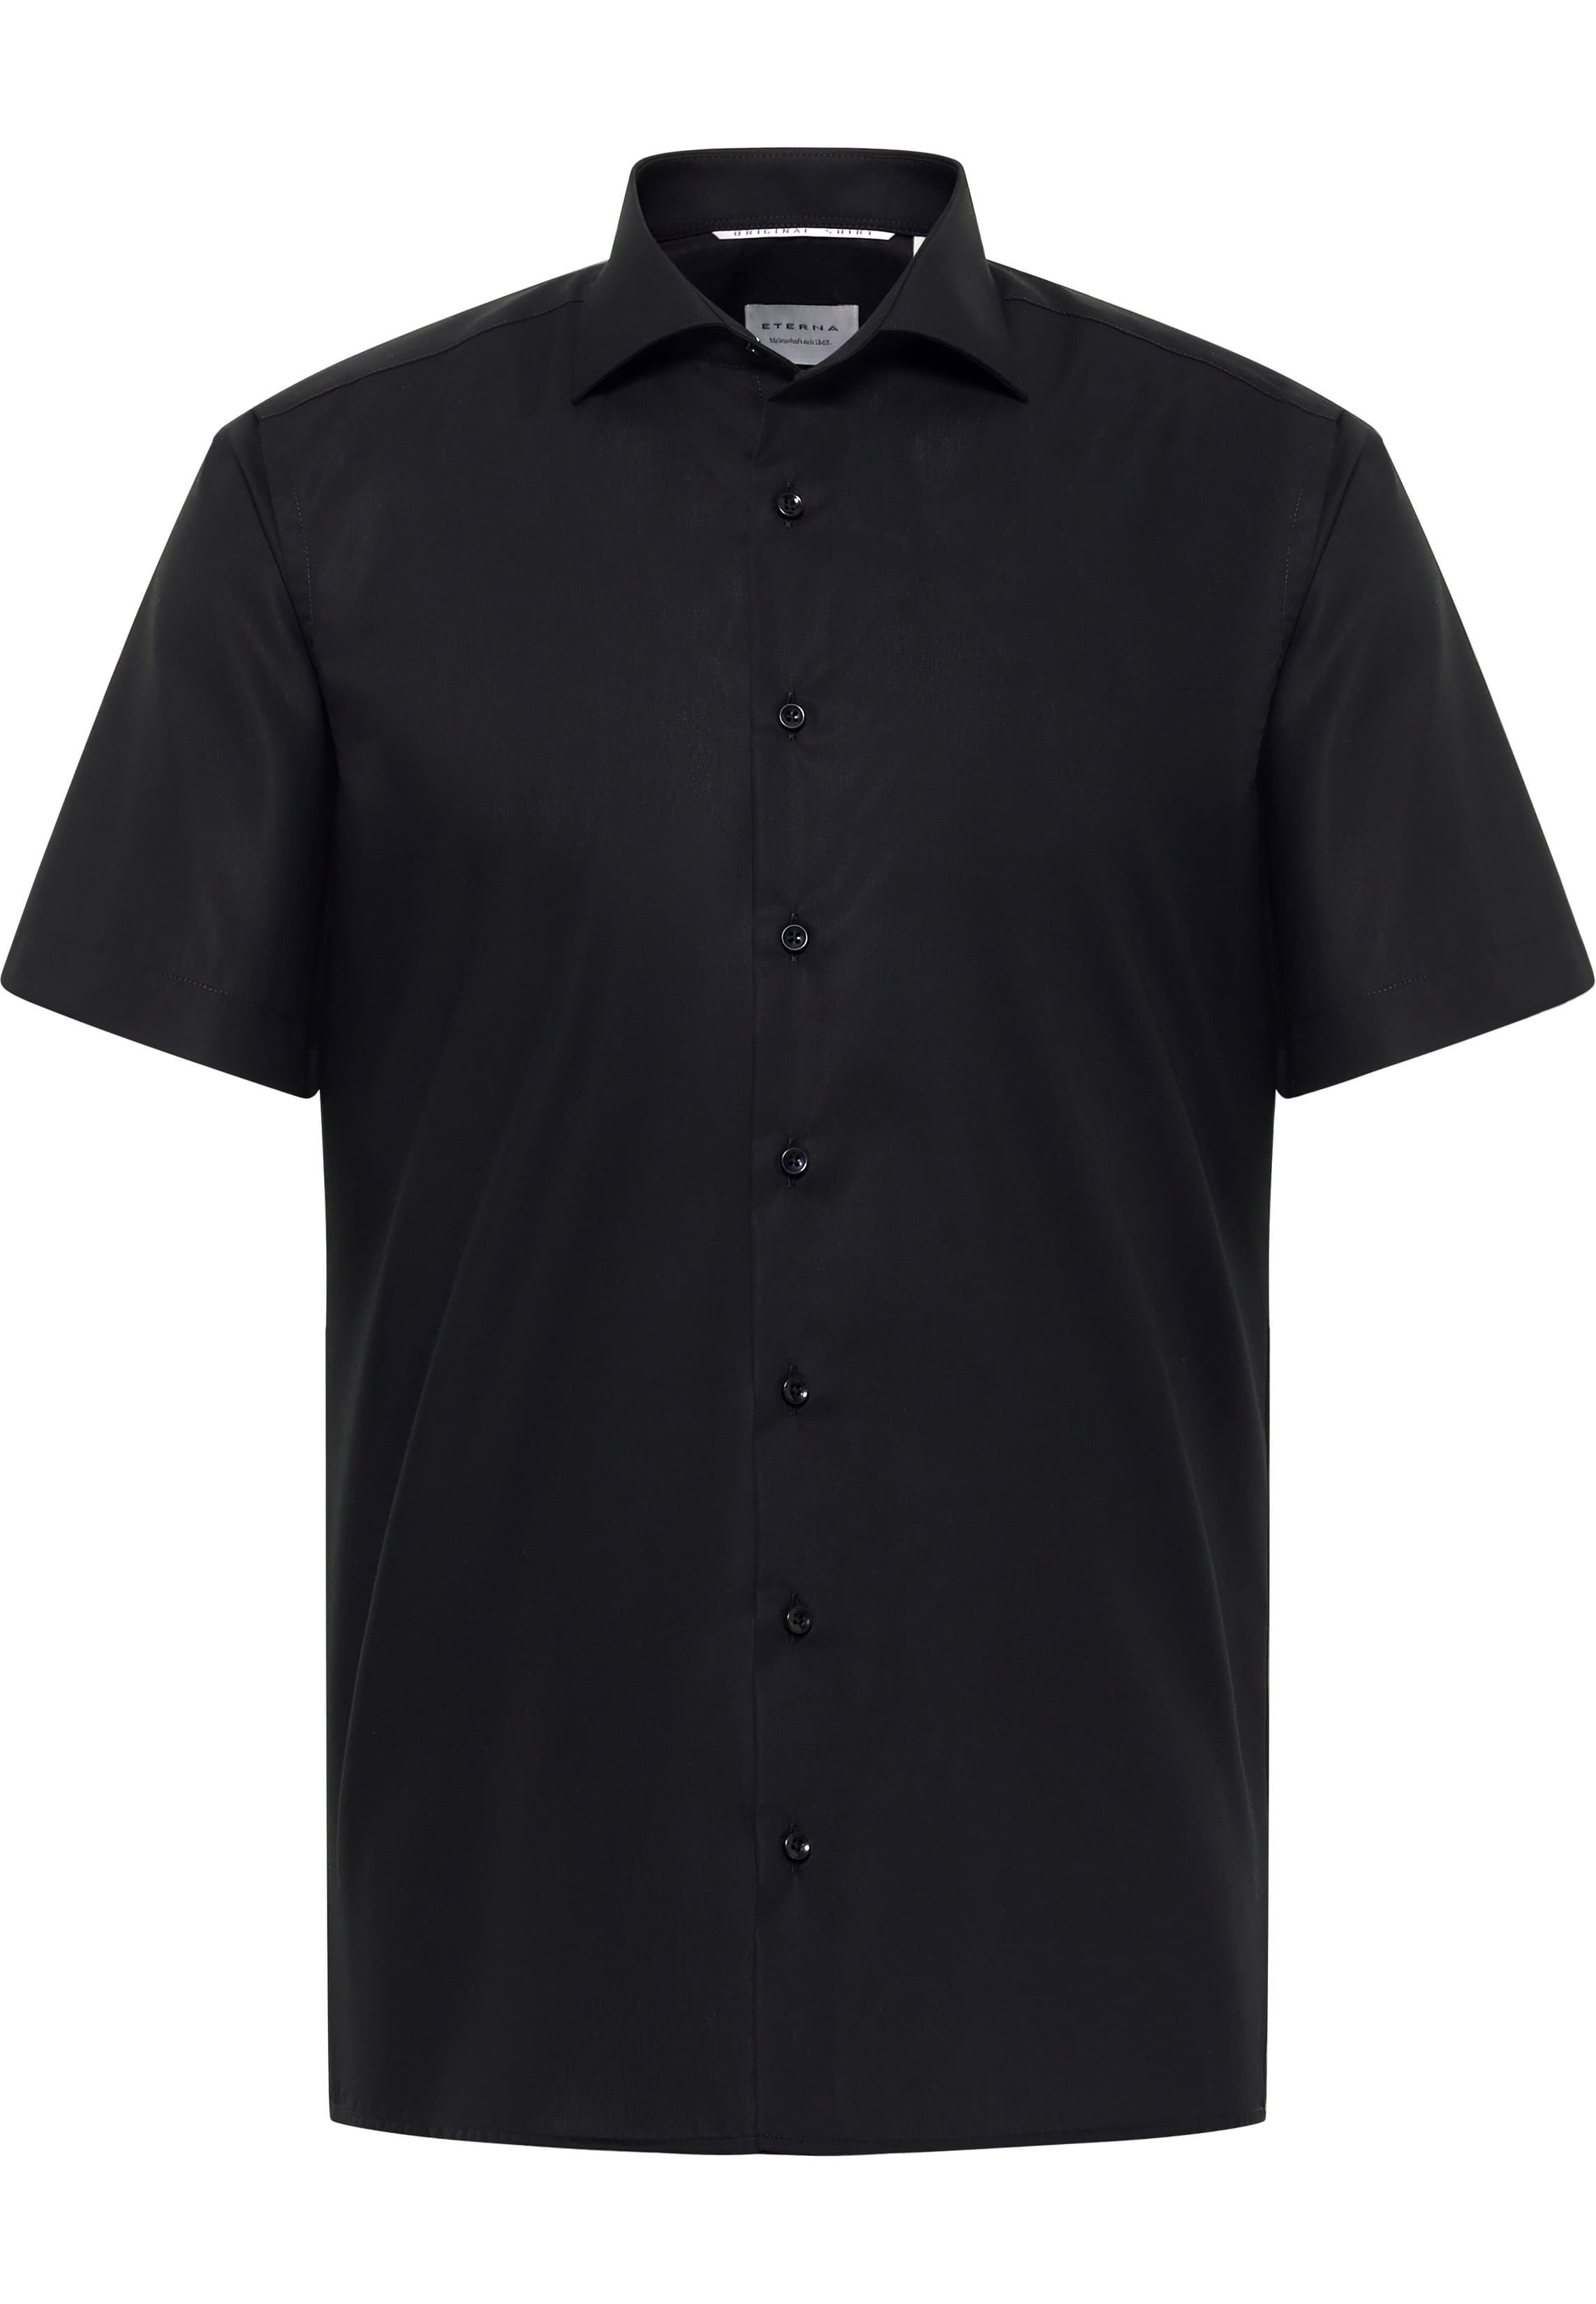 SLIM FIT Original Shirt in zwart vlakte